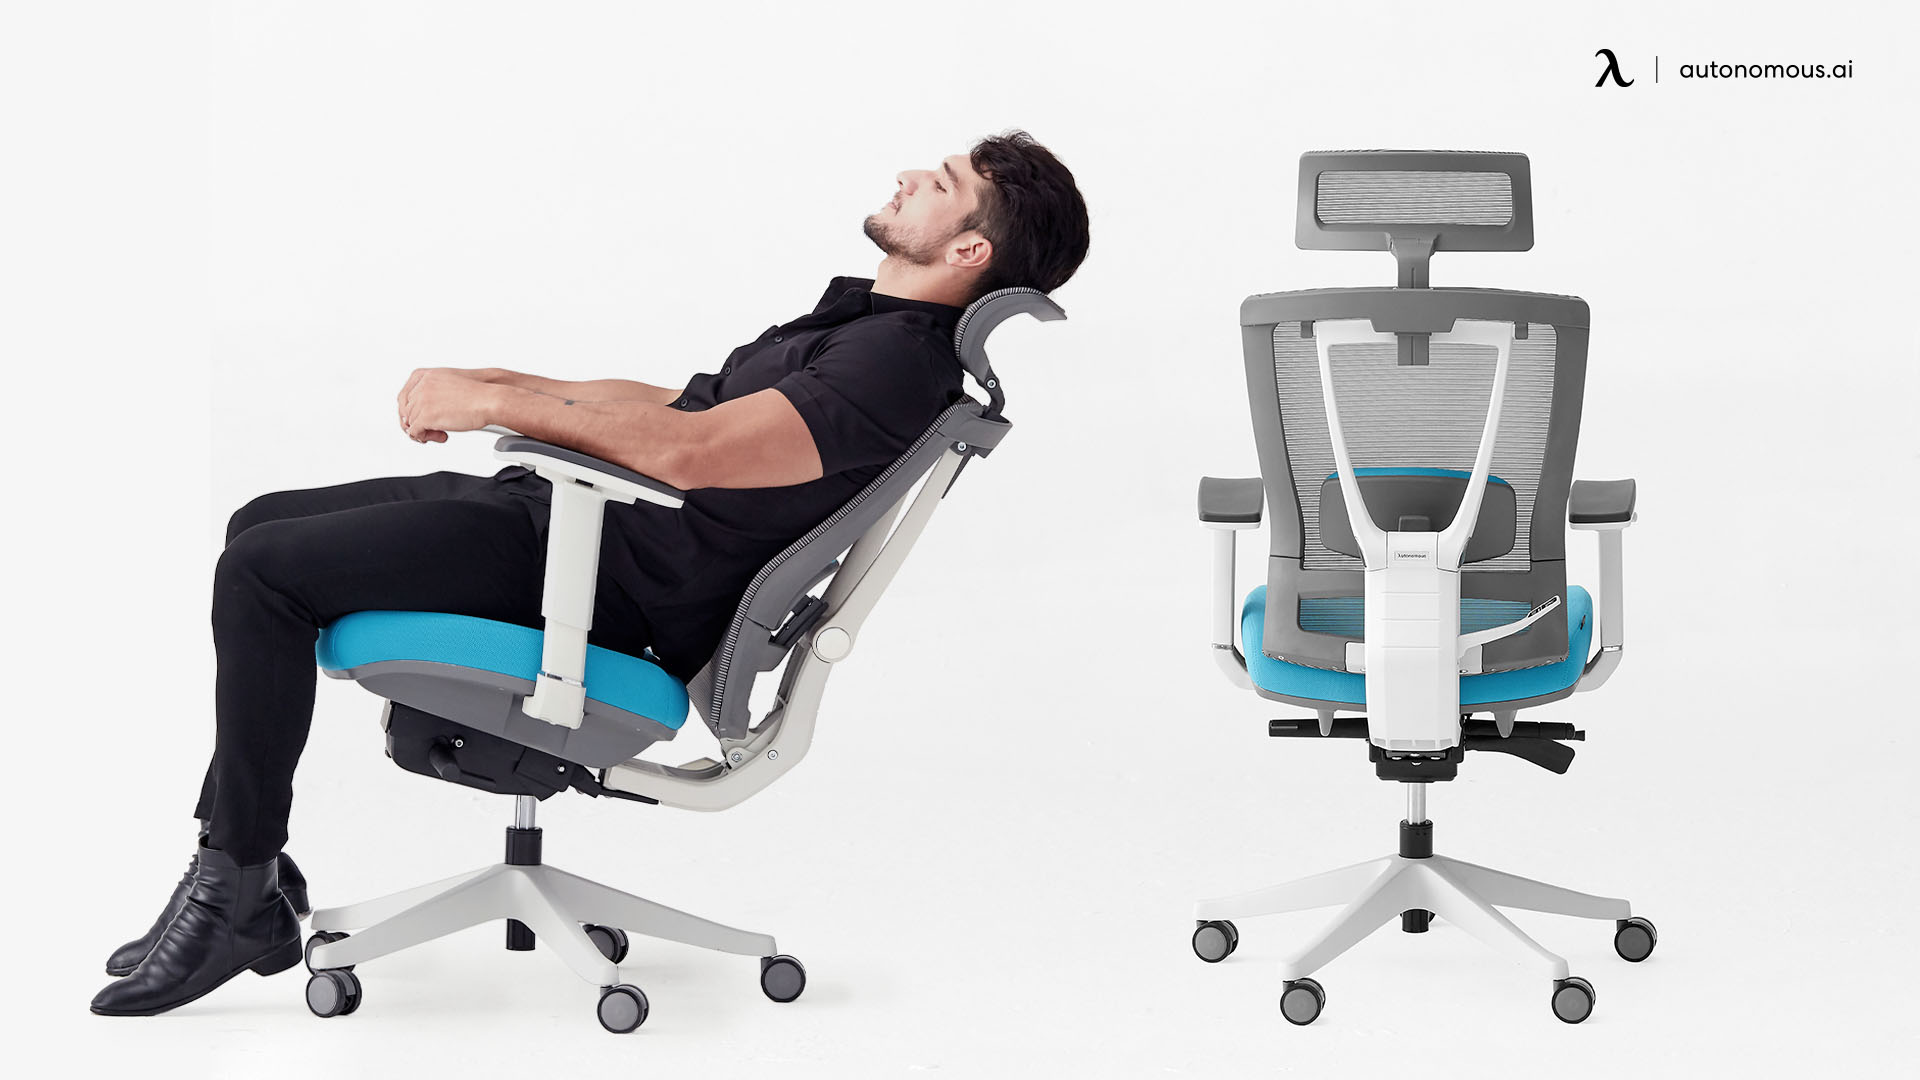 ErgoChair Pro office chair with headrest